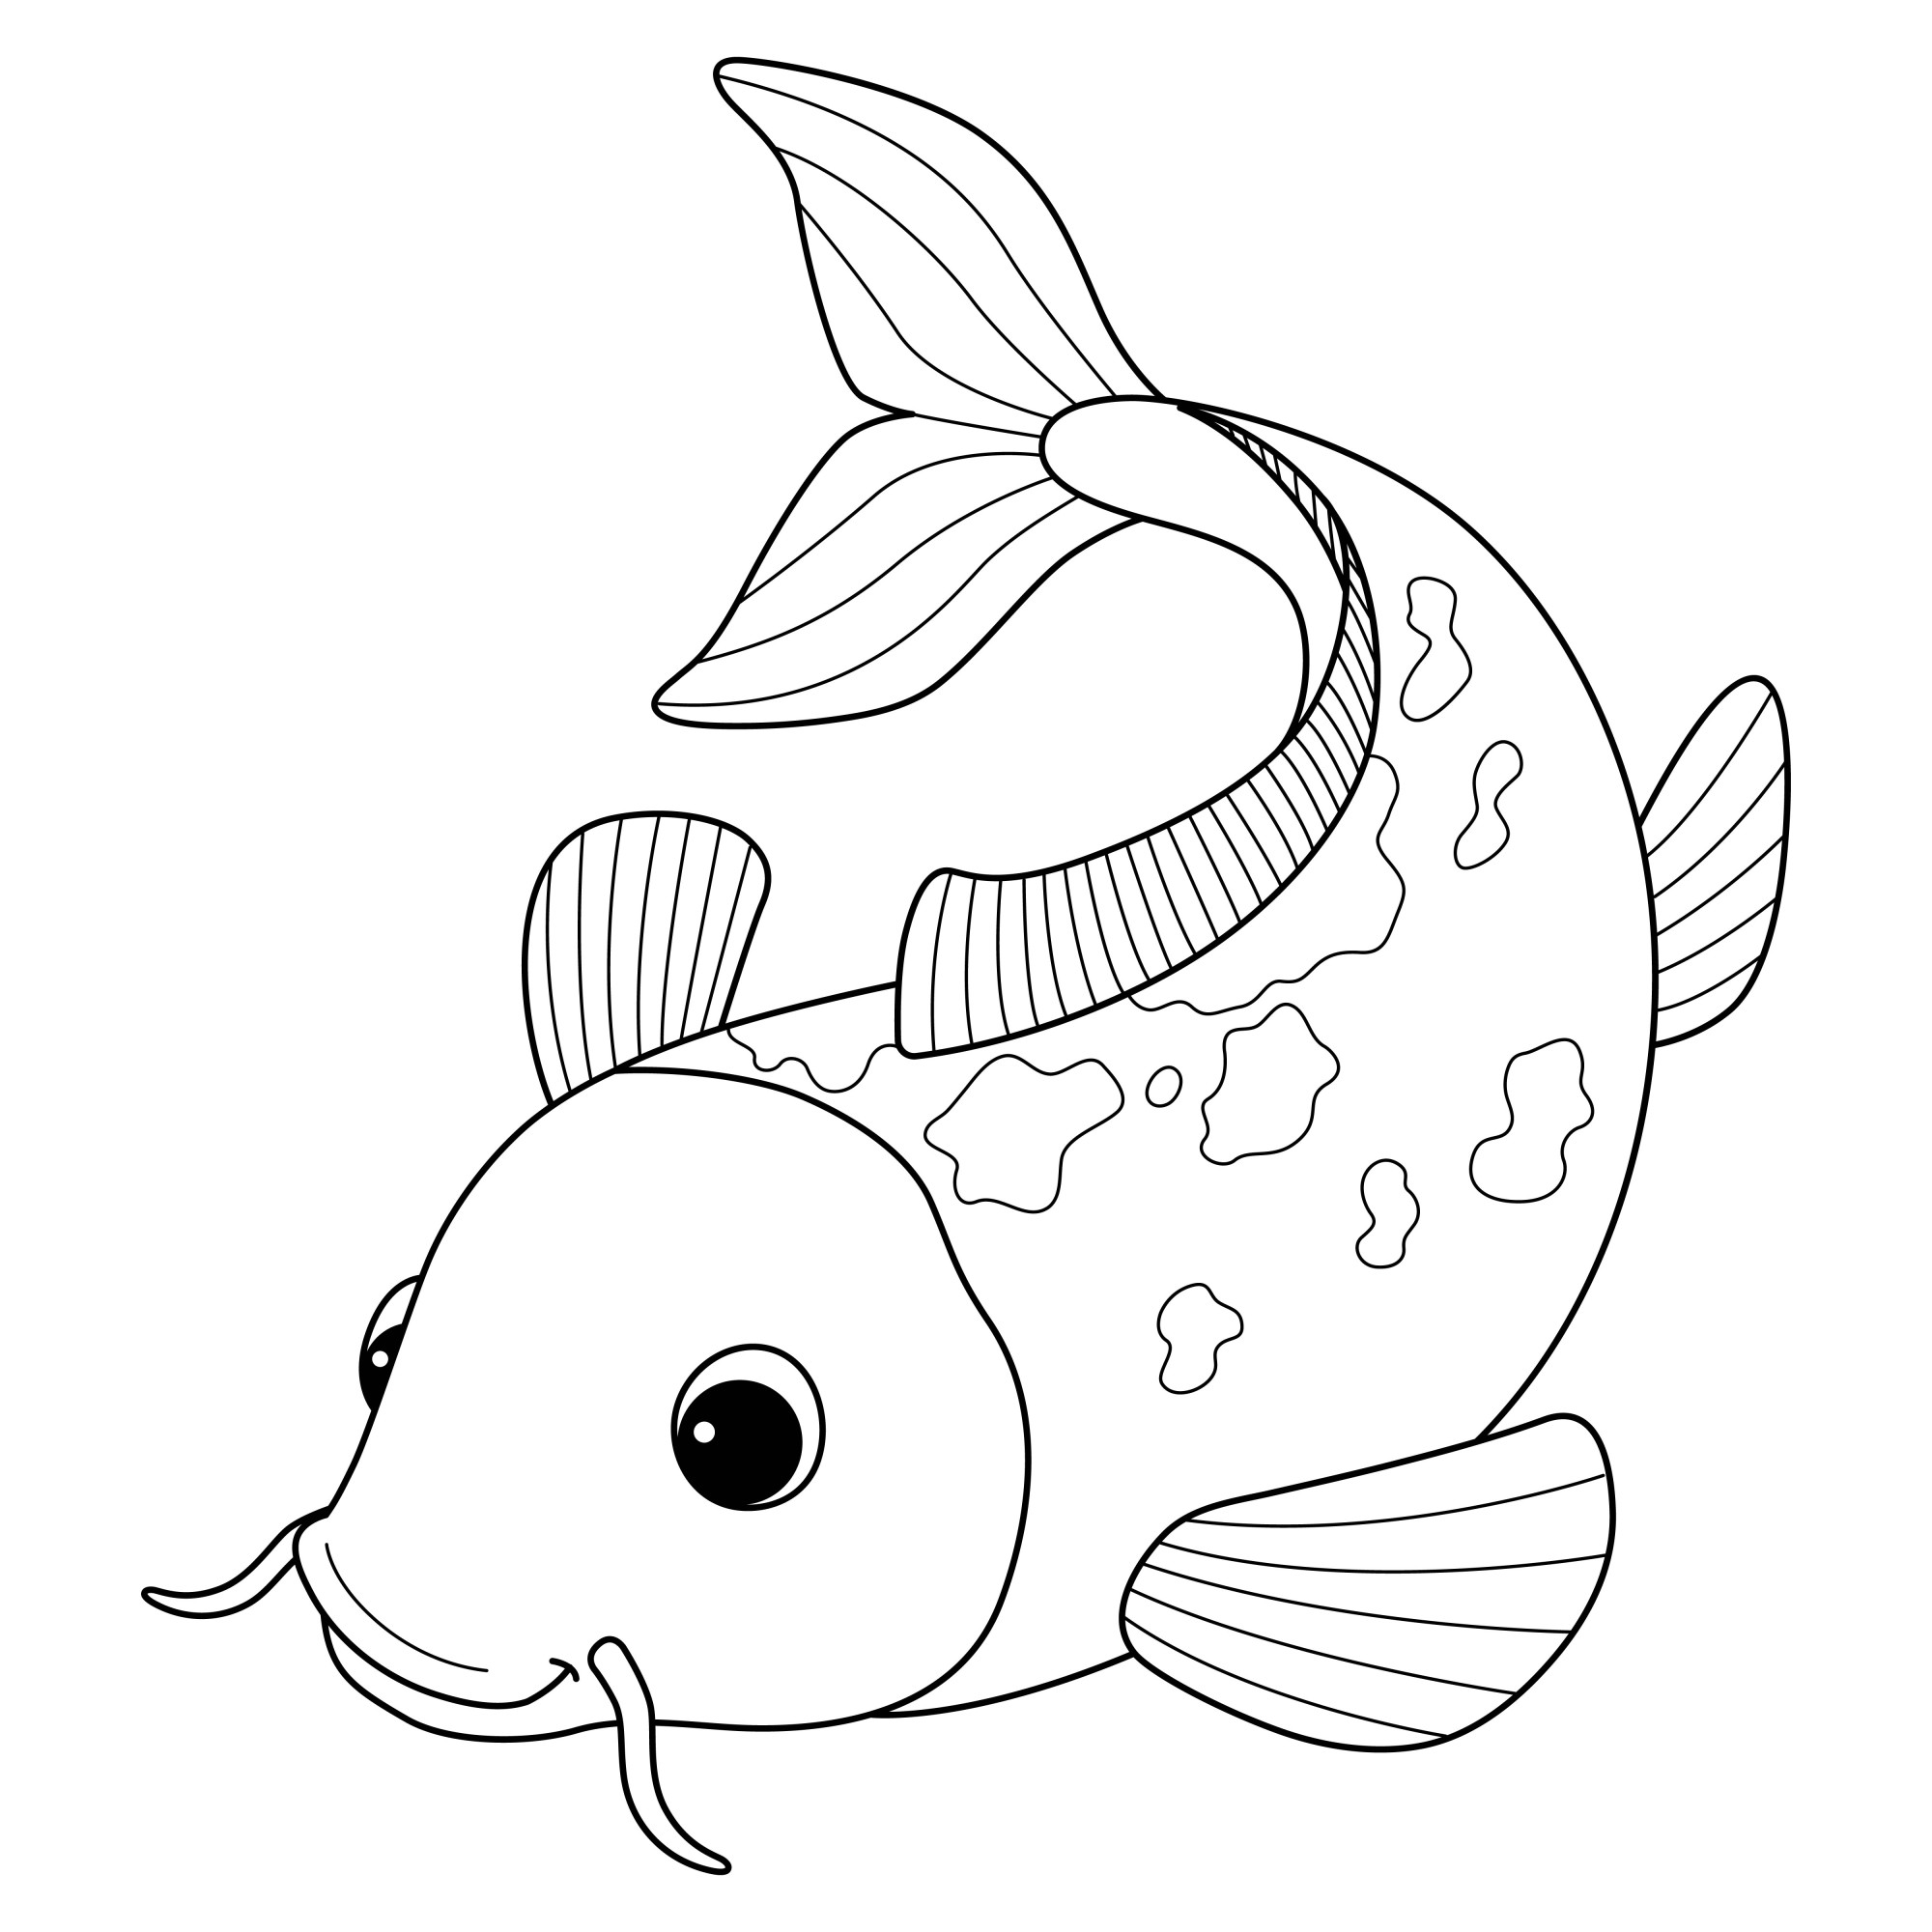 Раскраска для детей: рыба сом